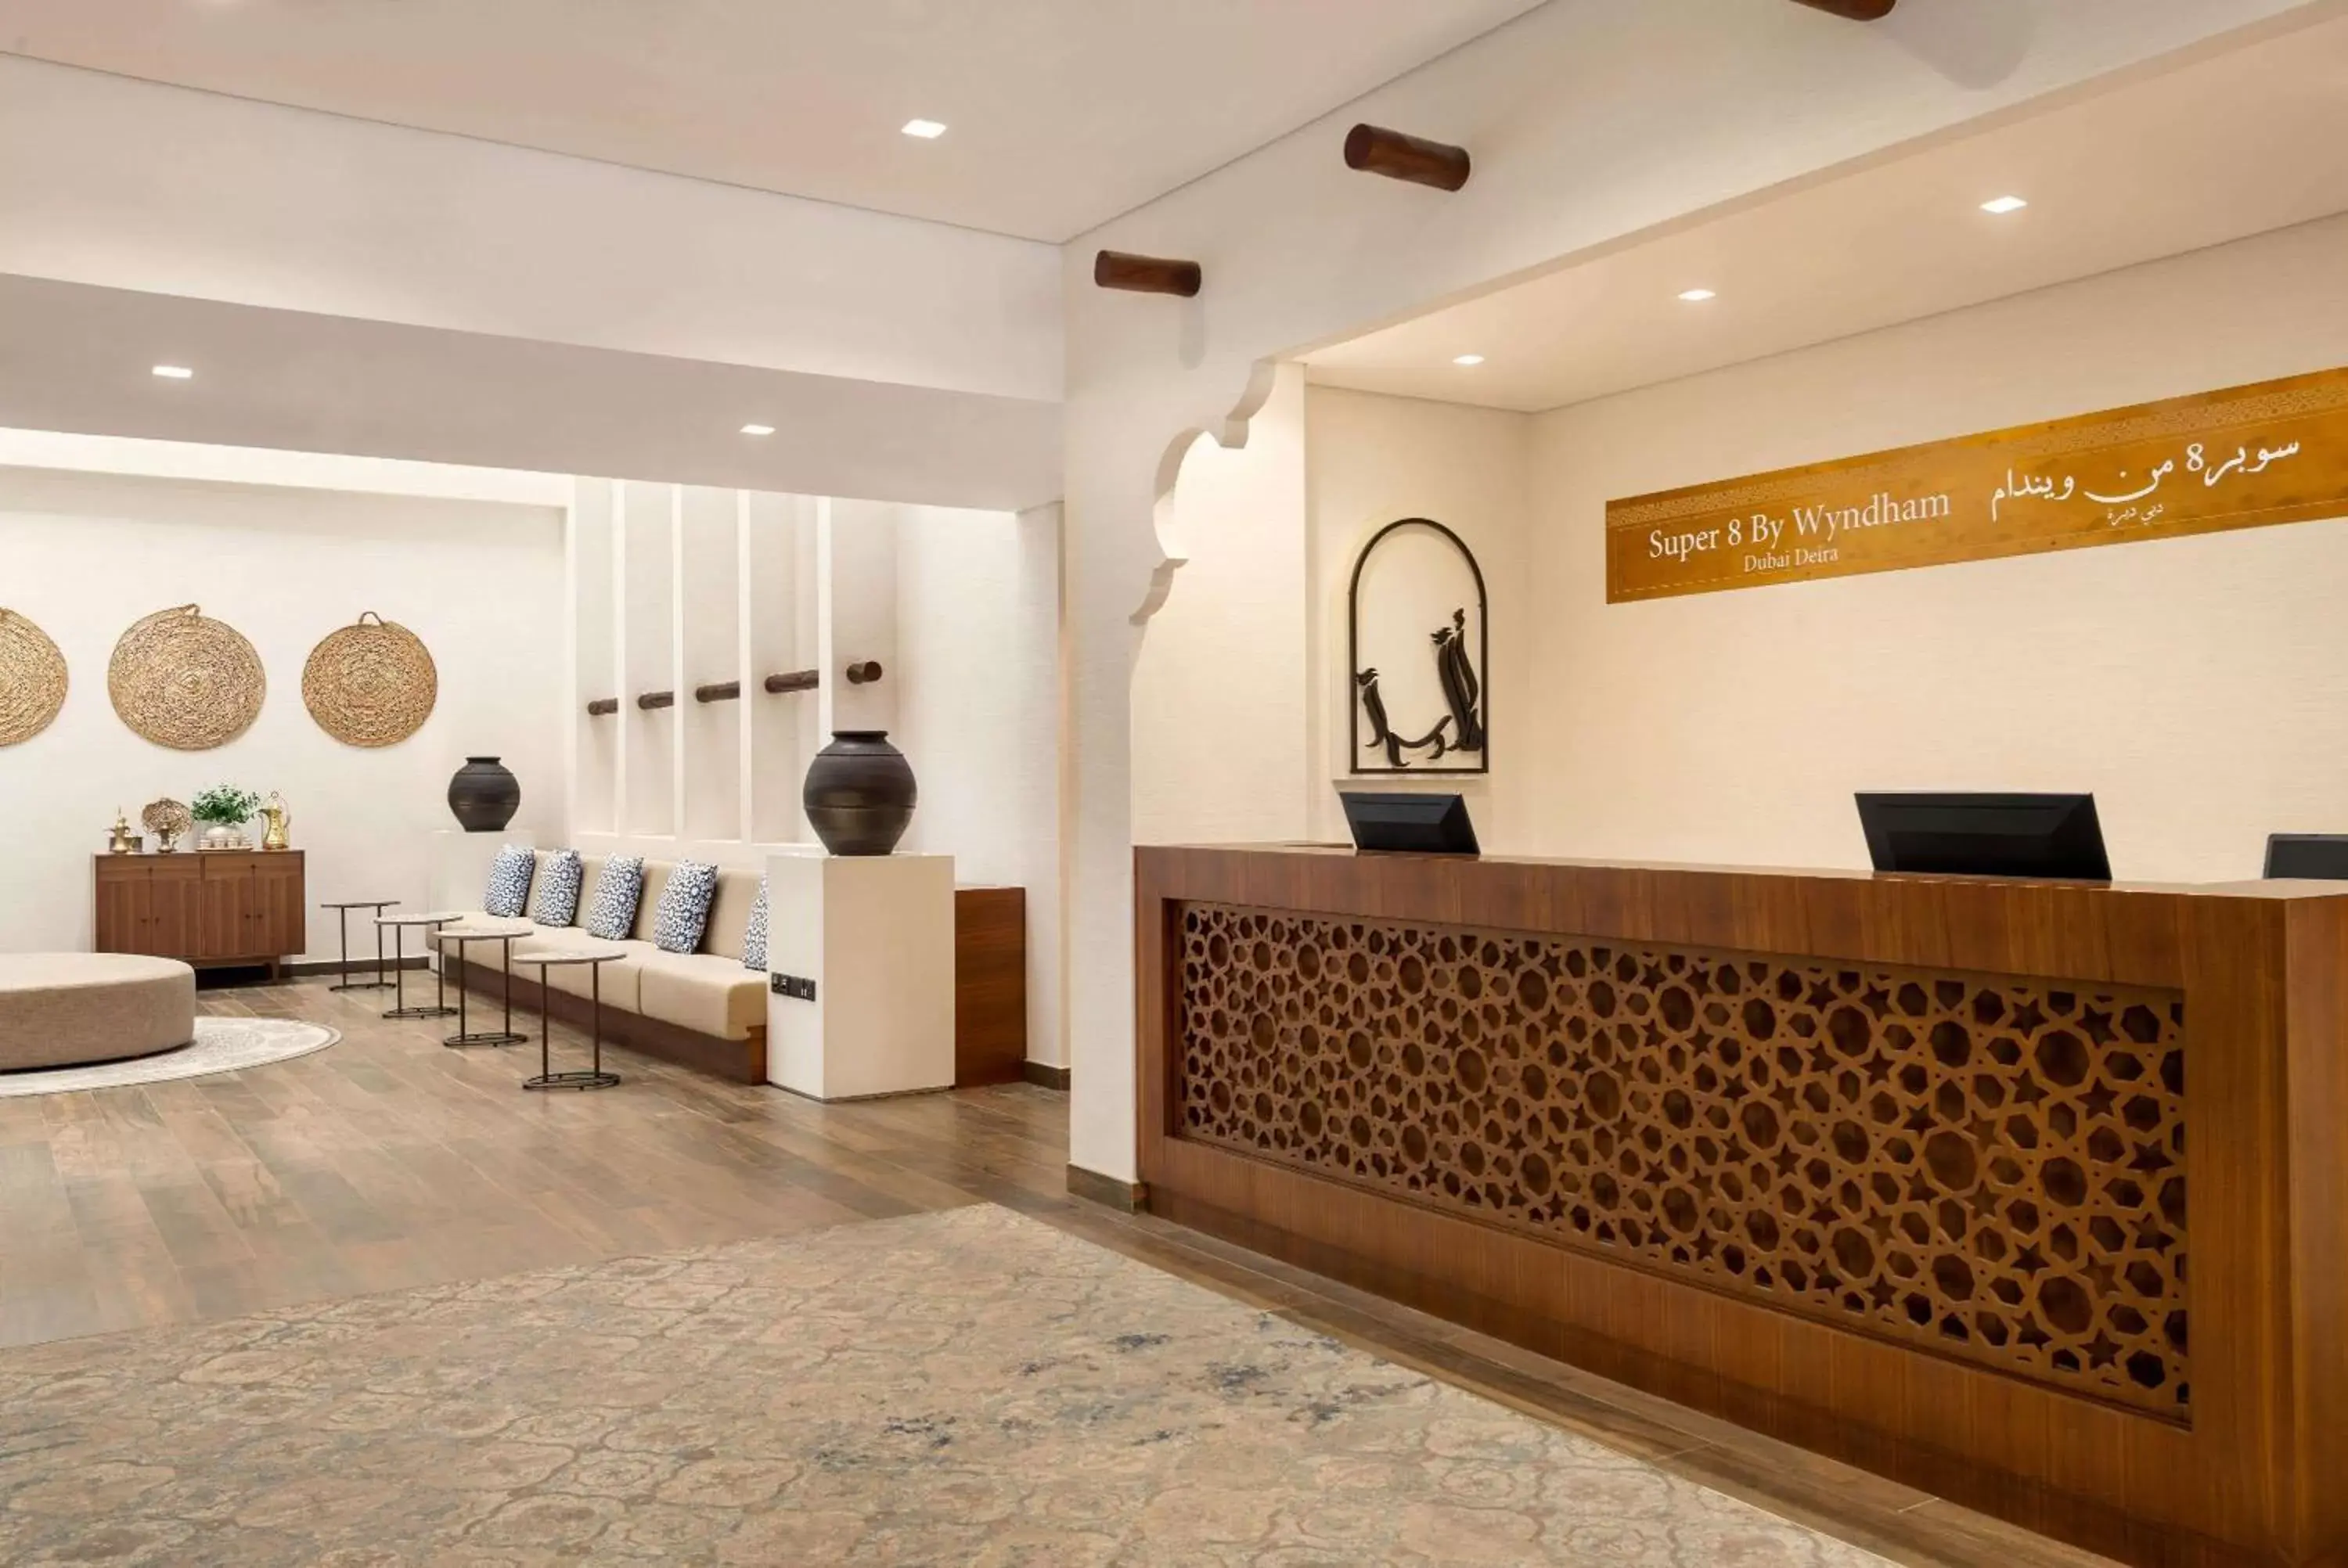 Lobby or reception, Lobby/Reception in Super 8 by Wyndham Dubai Deira